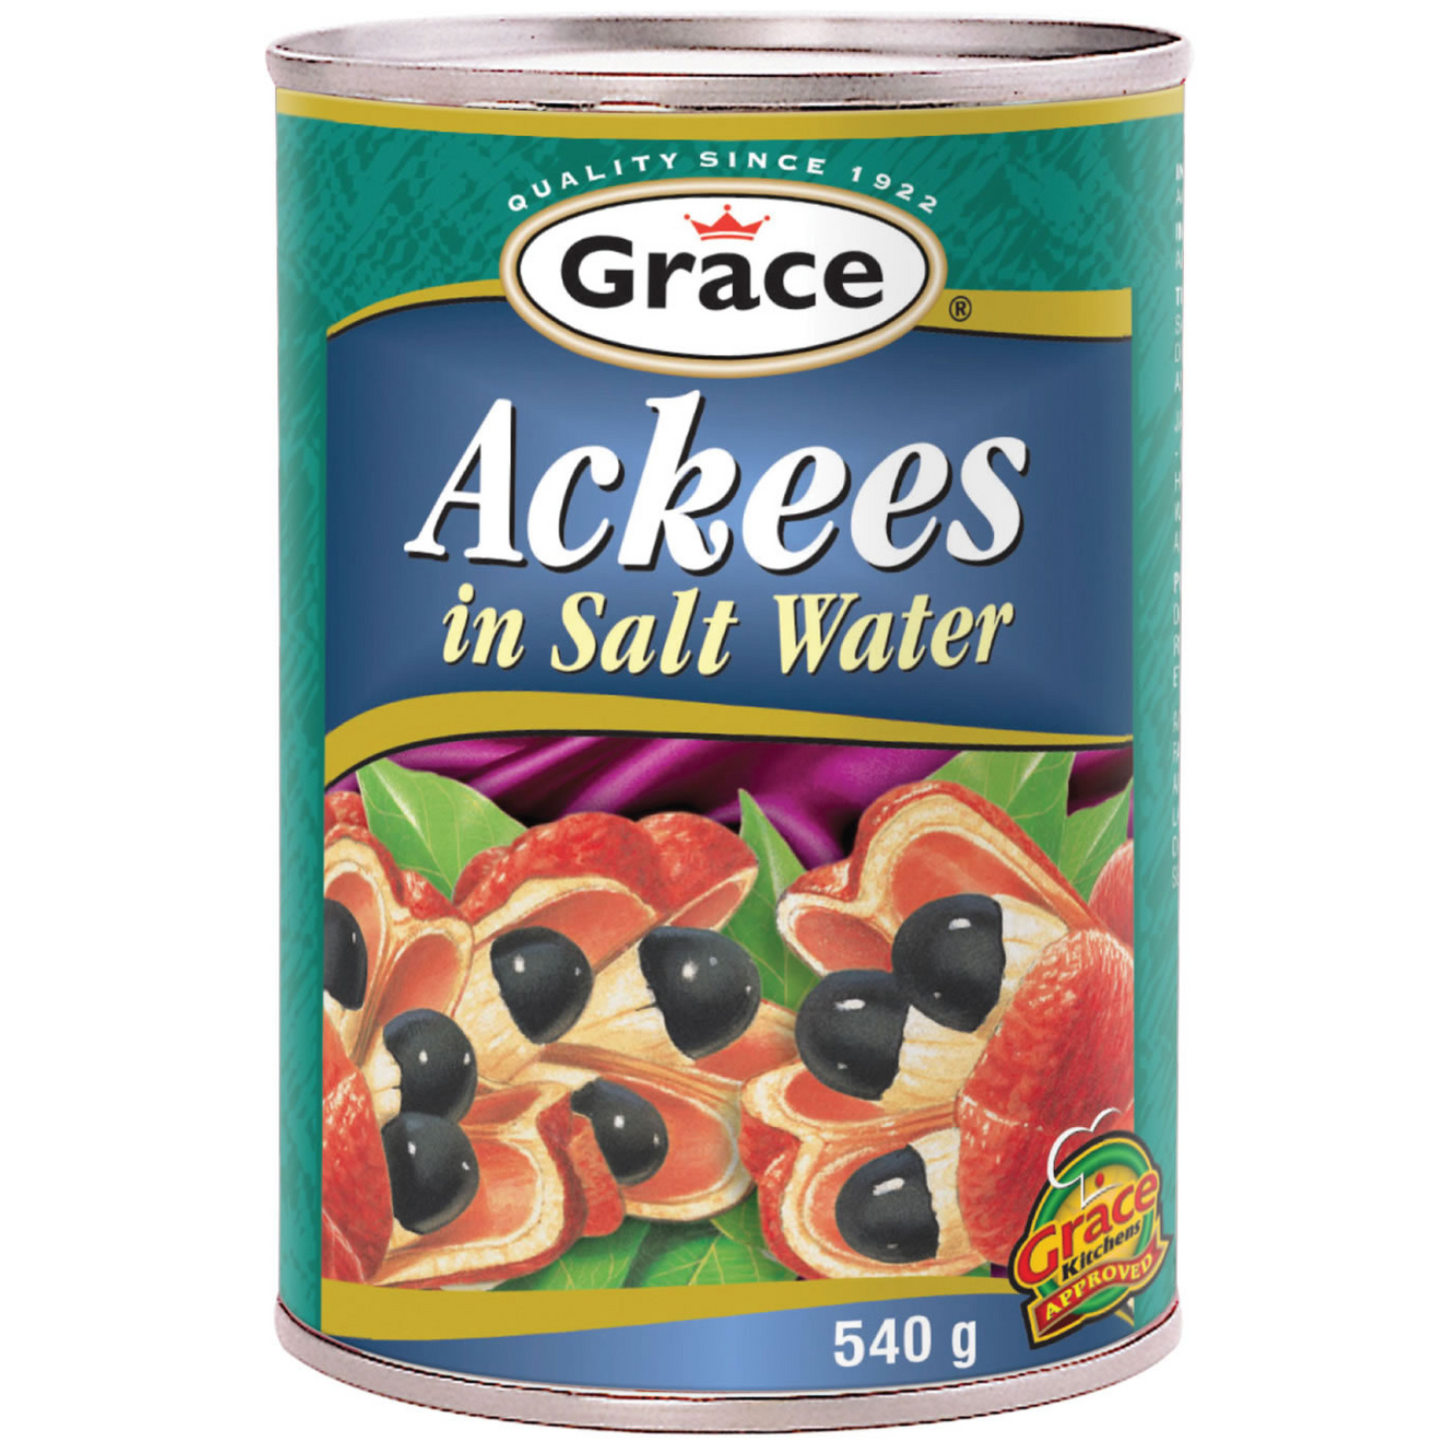 Ackees in Salt Water